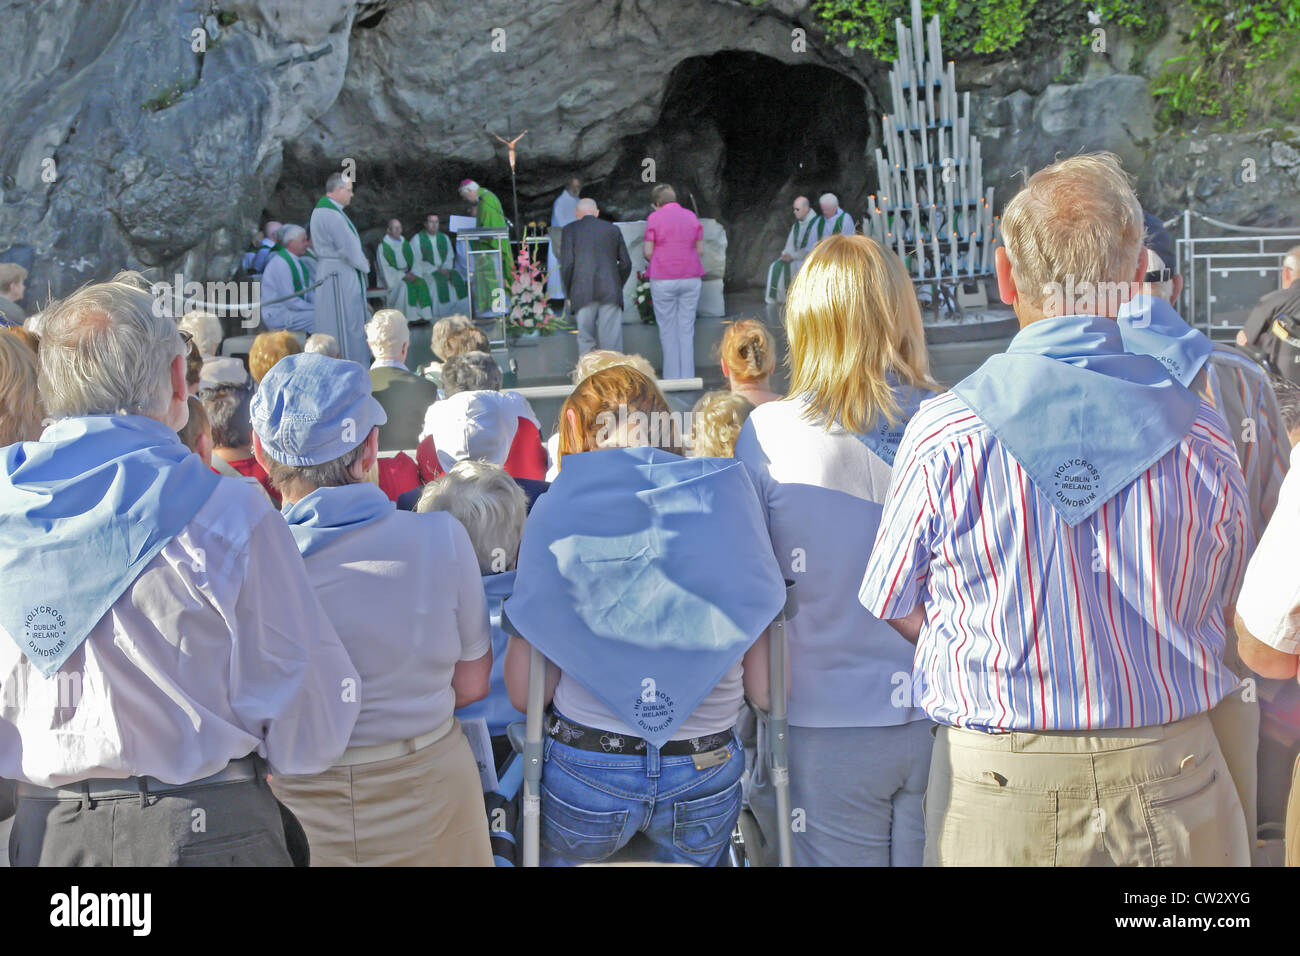 Grotte de Massabielle la grotte dans laquelle la production de l'eau de Lourdes de printemps se lève, et où les services sont régulièrement organisées. Banque D'Images